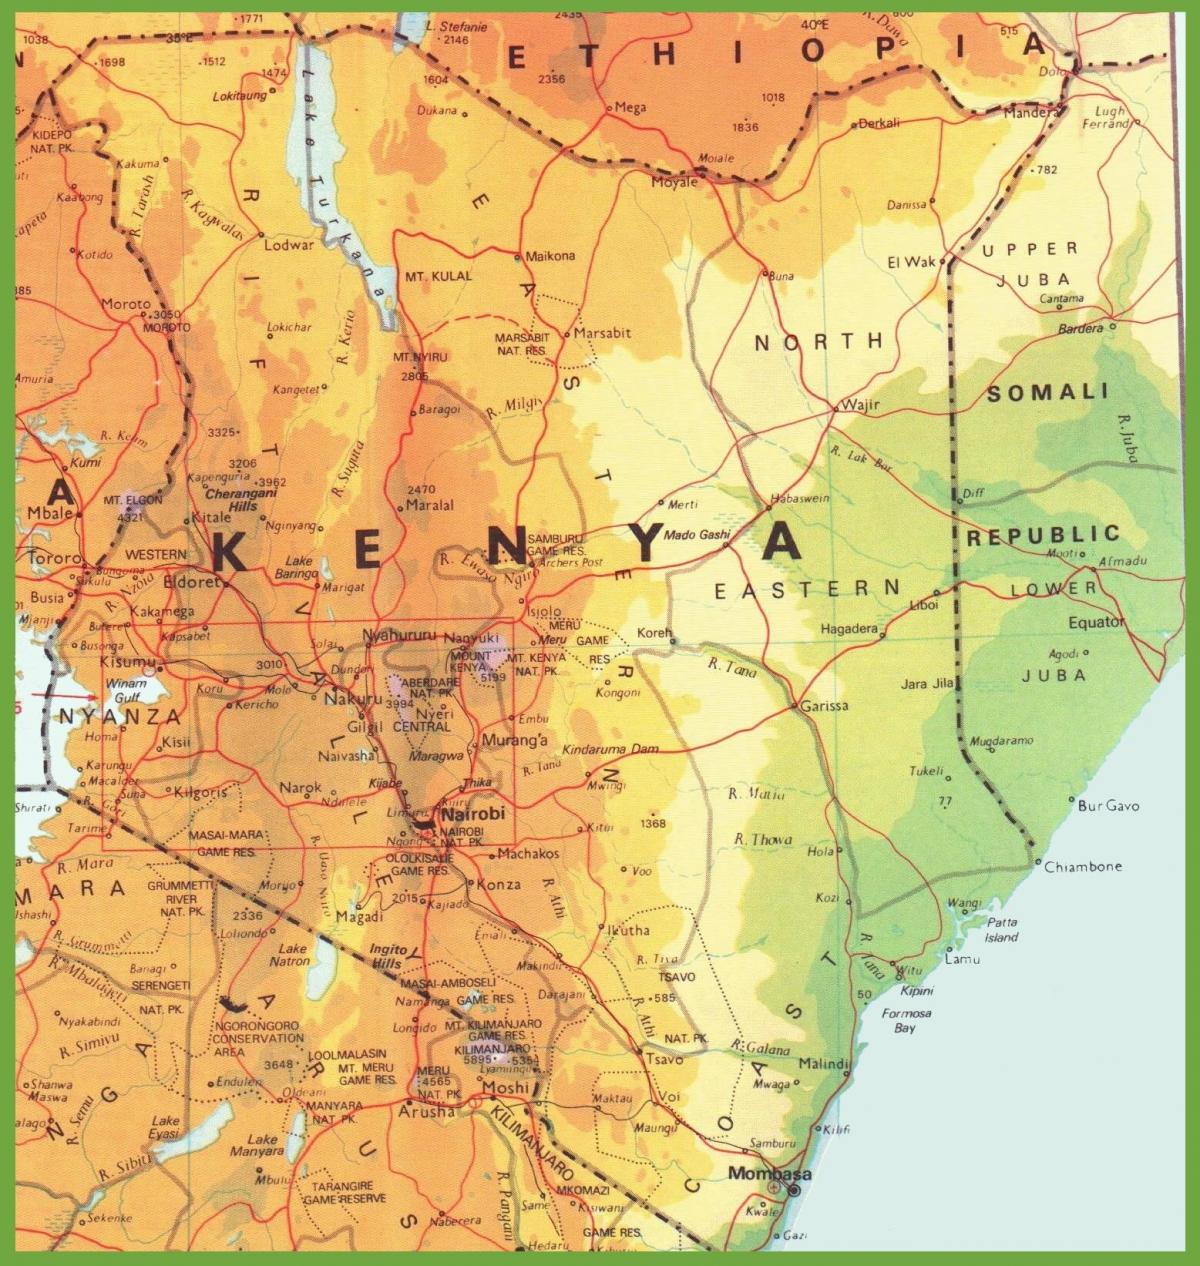 Kenya errepide sarearen mapa